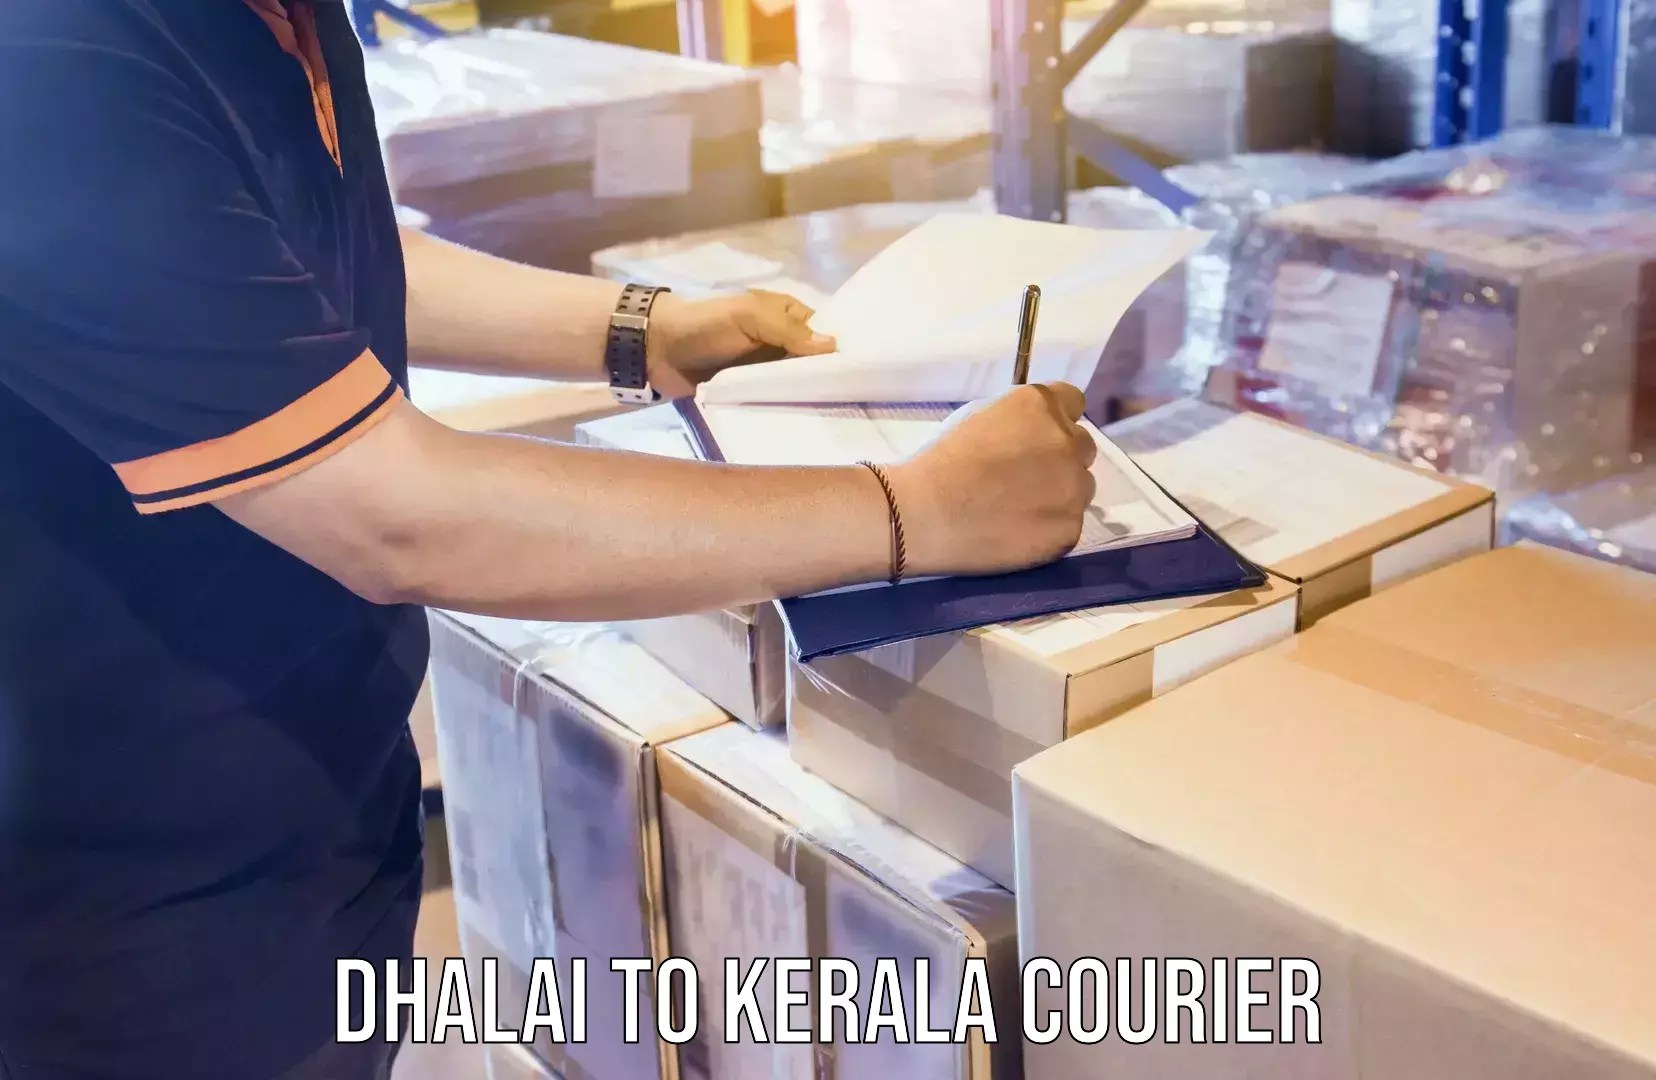 Door-to-door freight service Dhalai to Kerala